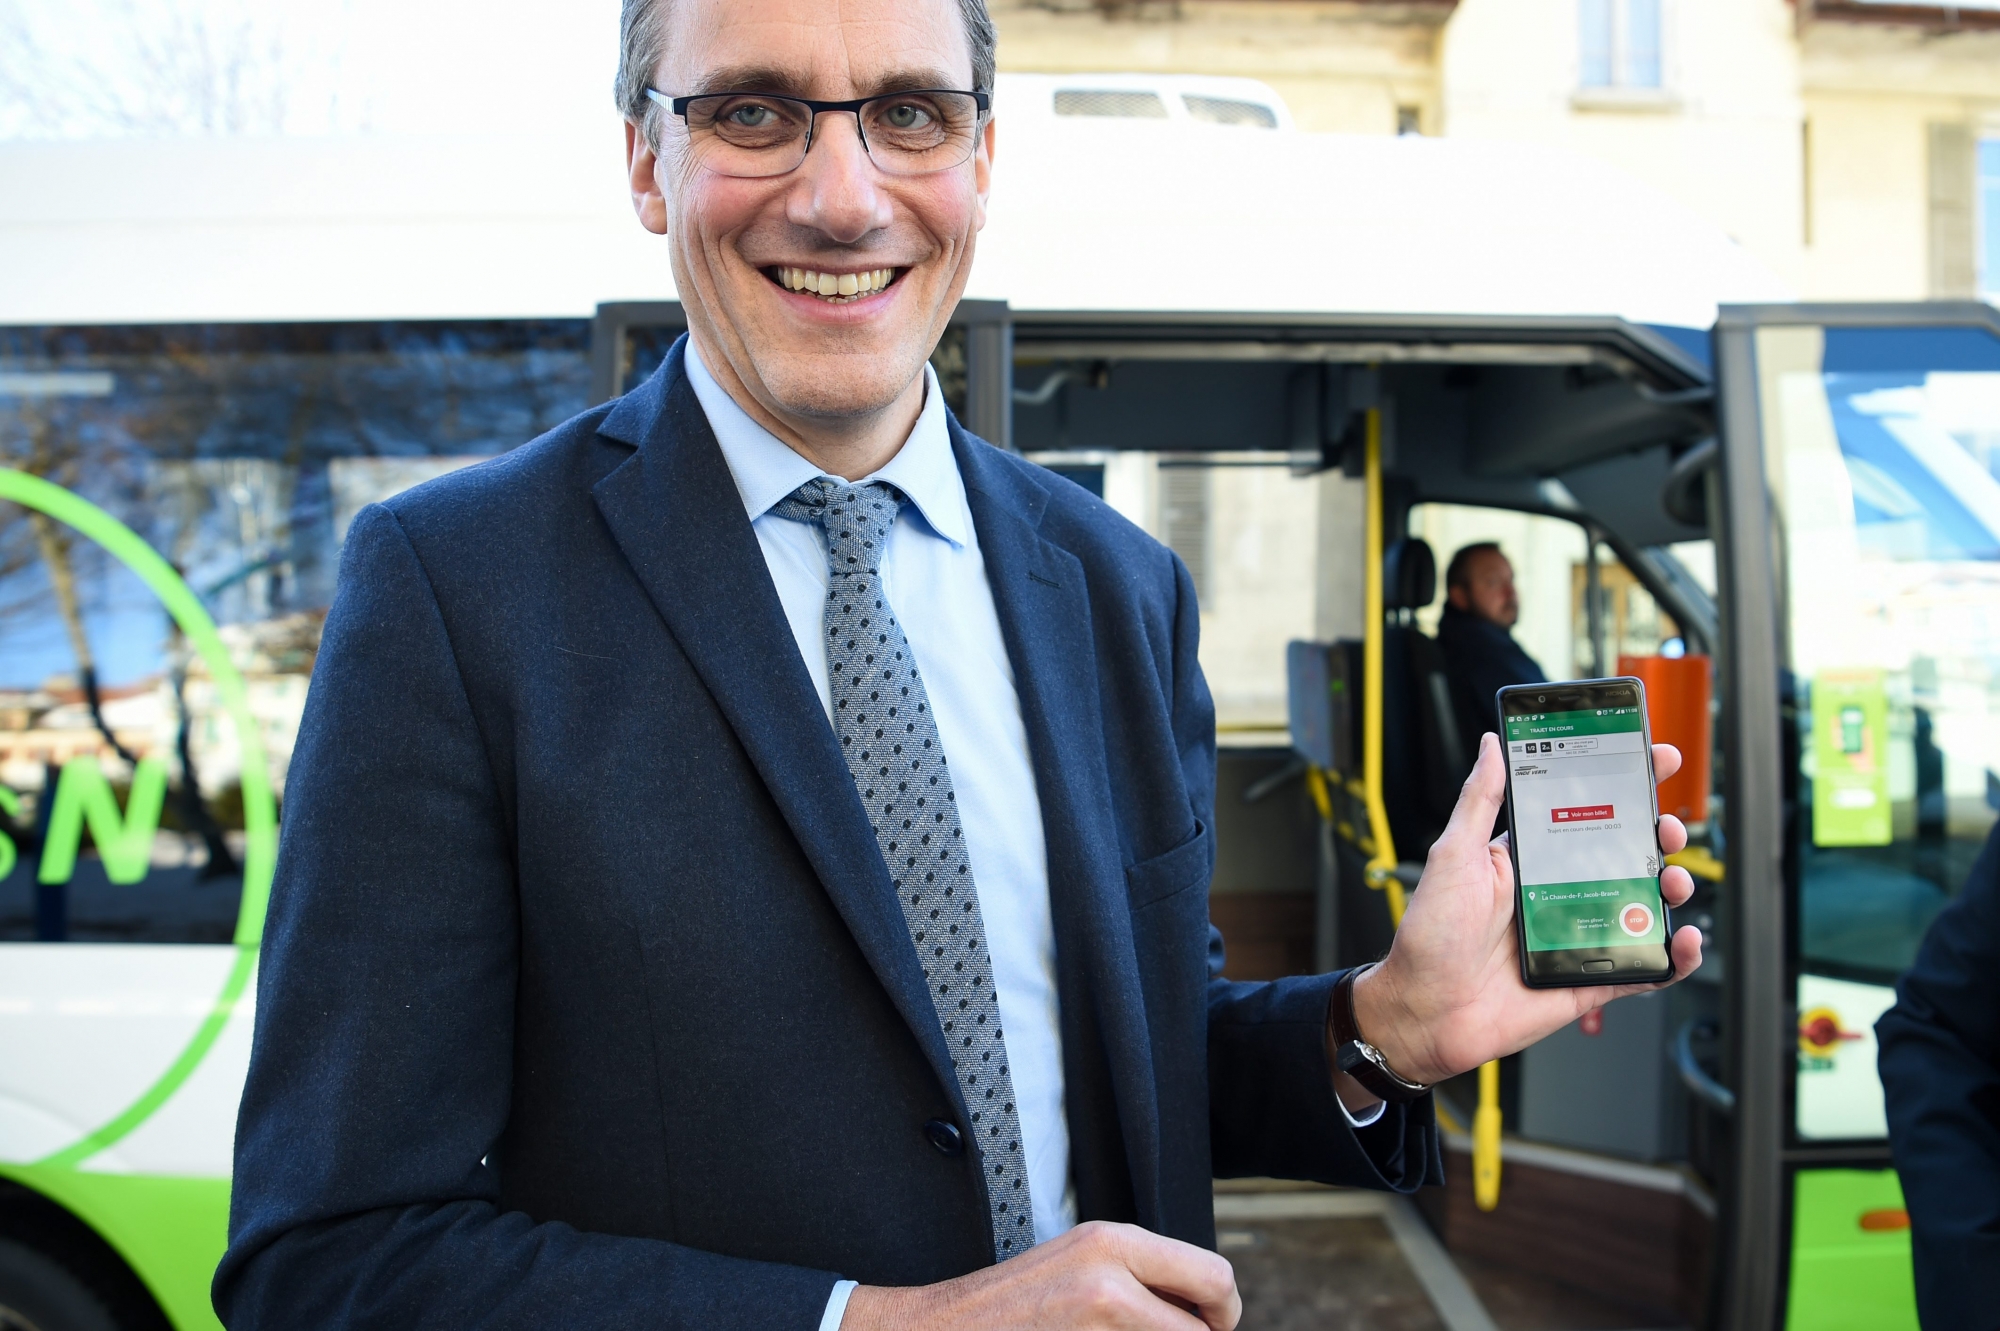 Trans N propose une nouvelle application (Fairtiq) pour prendre son ticket de transport a l'aide de son smartphone.

LA CHAUX-DE-FONDS 7/12/2017
Photo: Christian Galley